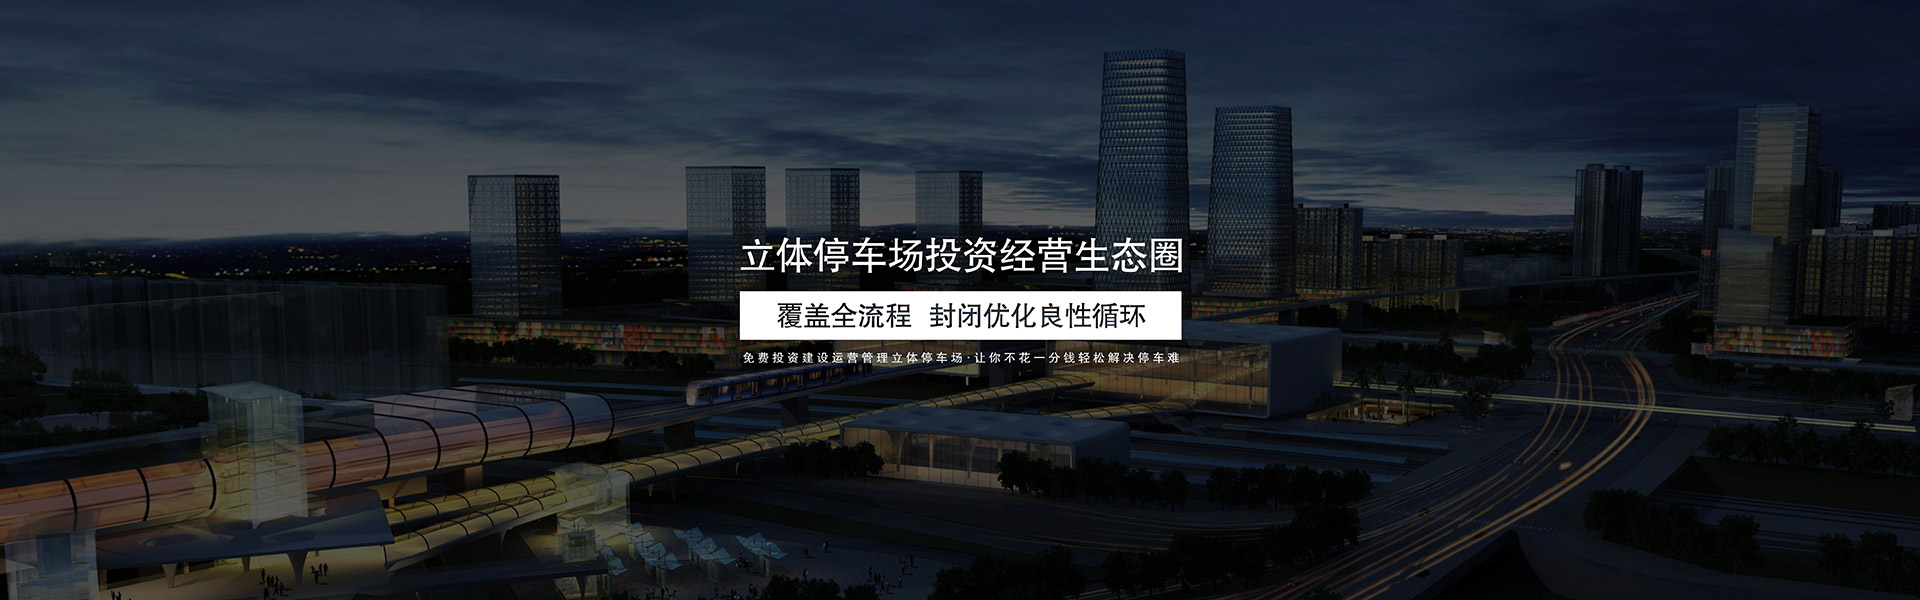 澄江停车场建设规划